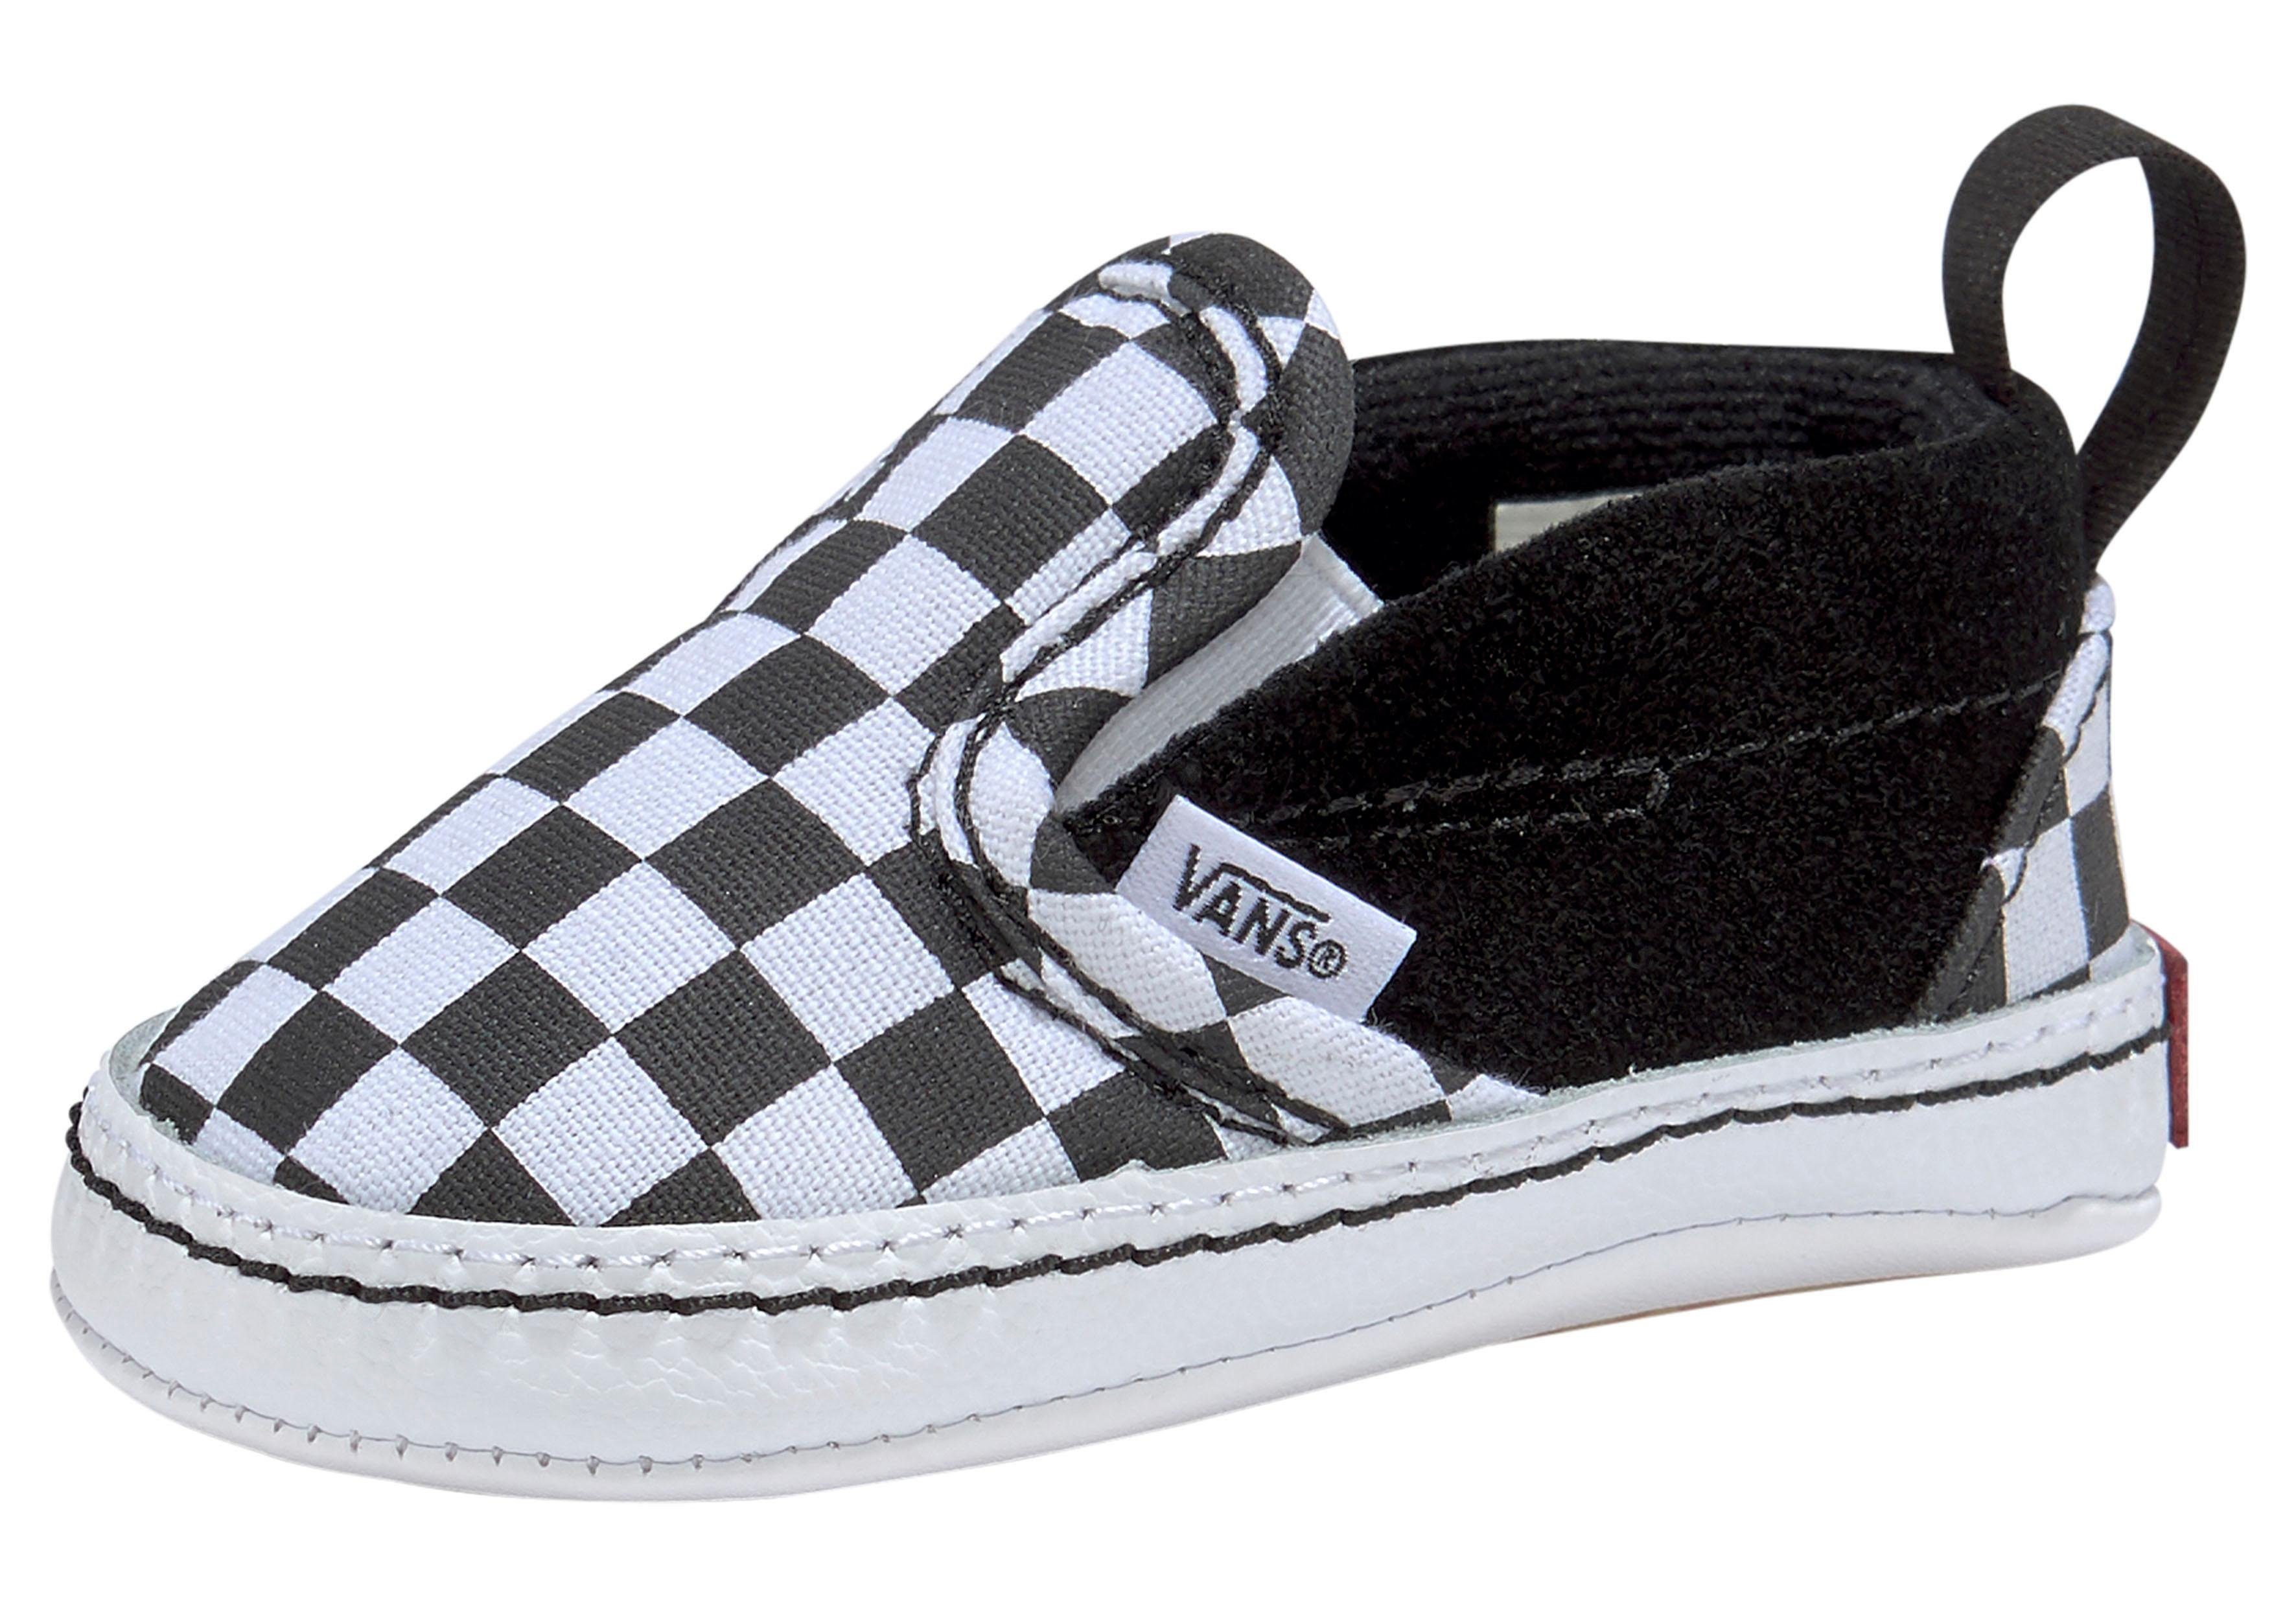 Schwarz-weiße Vans Schuhe online kaufen | OTTO